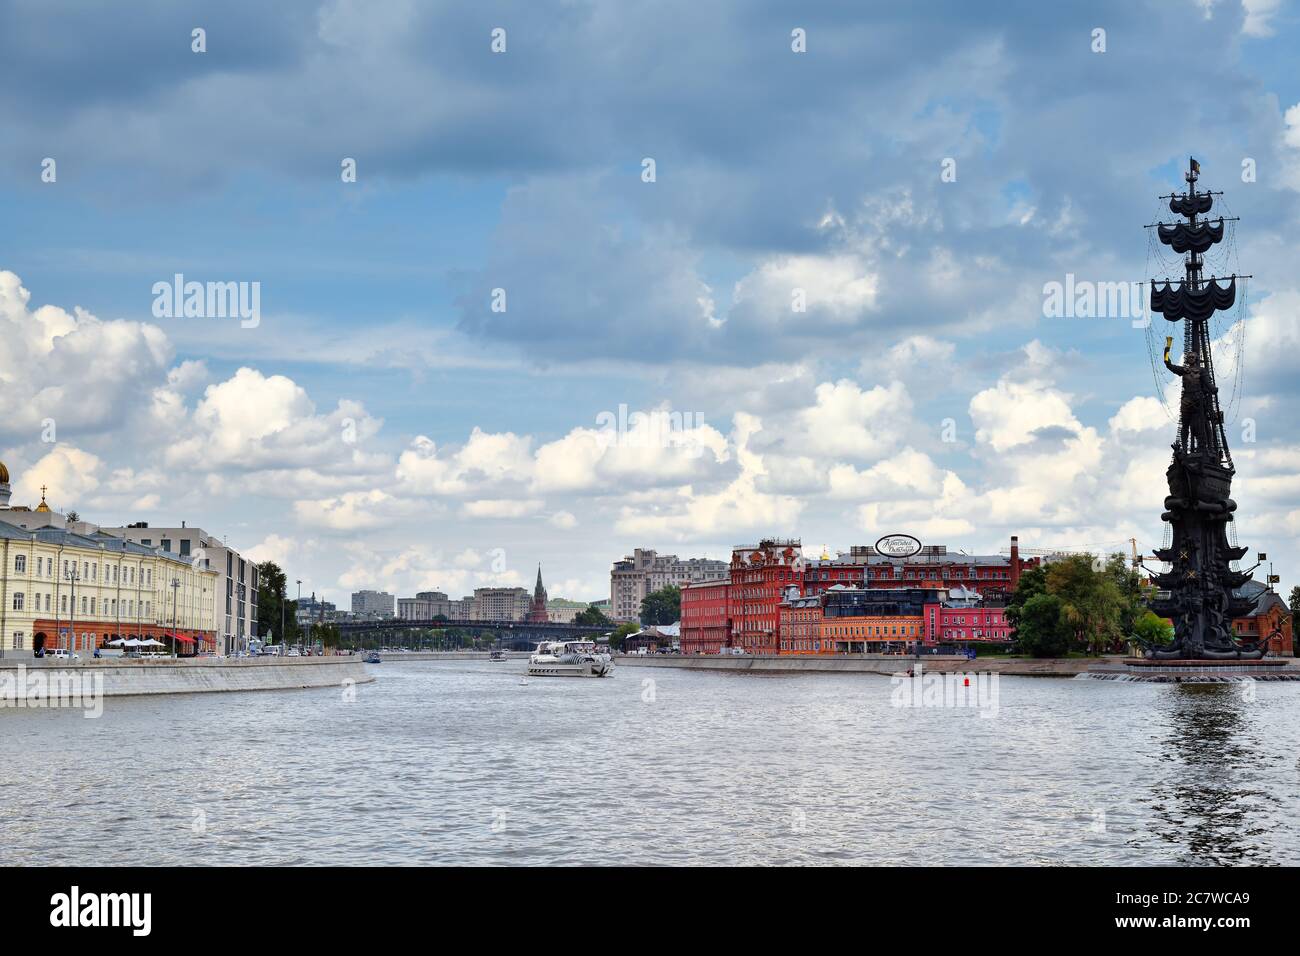 Moskau, Russland - 14. Juli 2018: Morgenansicht auf dem Moskauer Fluss, Pretschistenskaja Damm und Denkmal für Peter I. bei Sommeranbruch Stockfoto